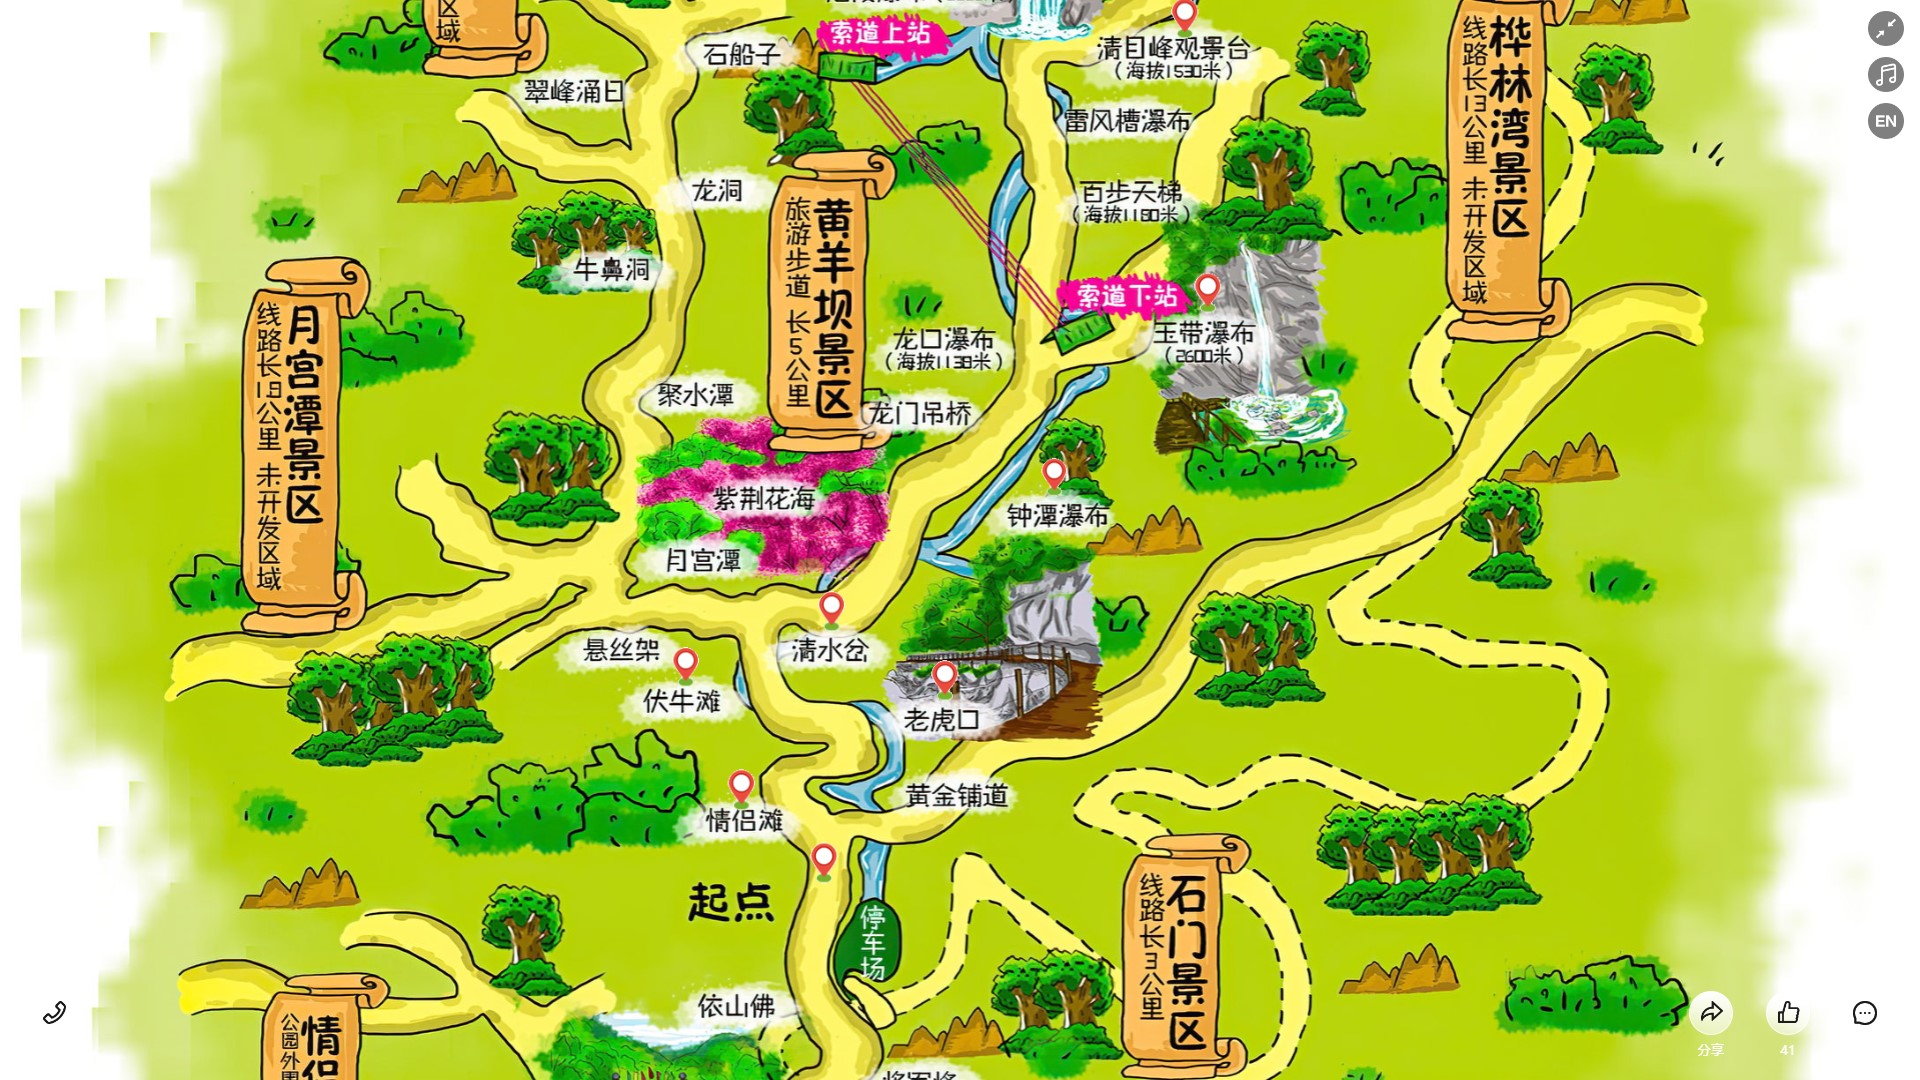 平川景区导览系统